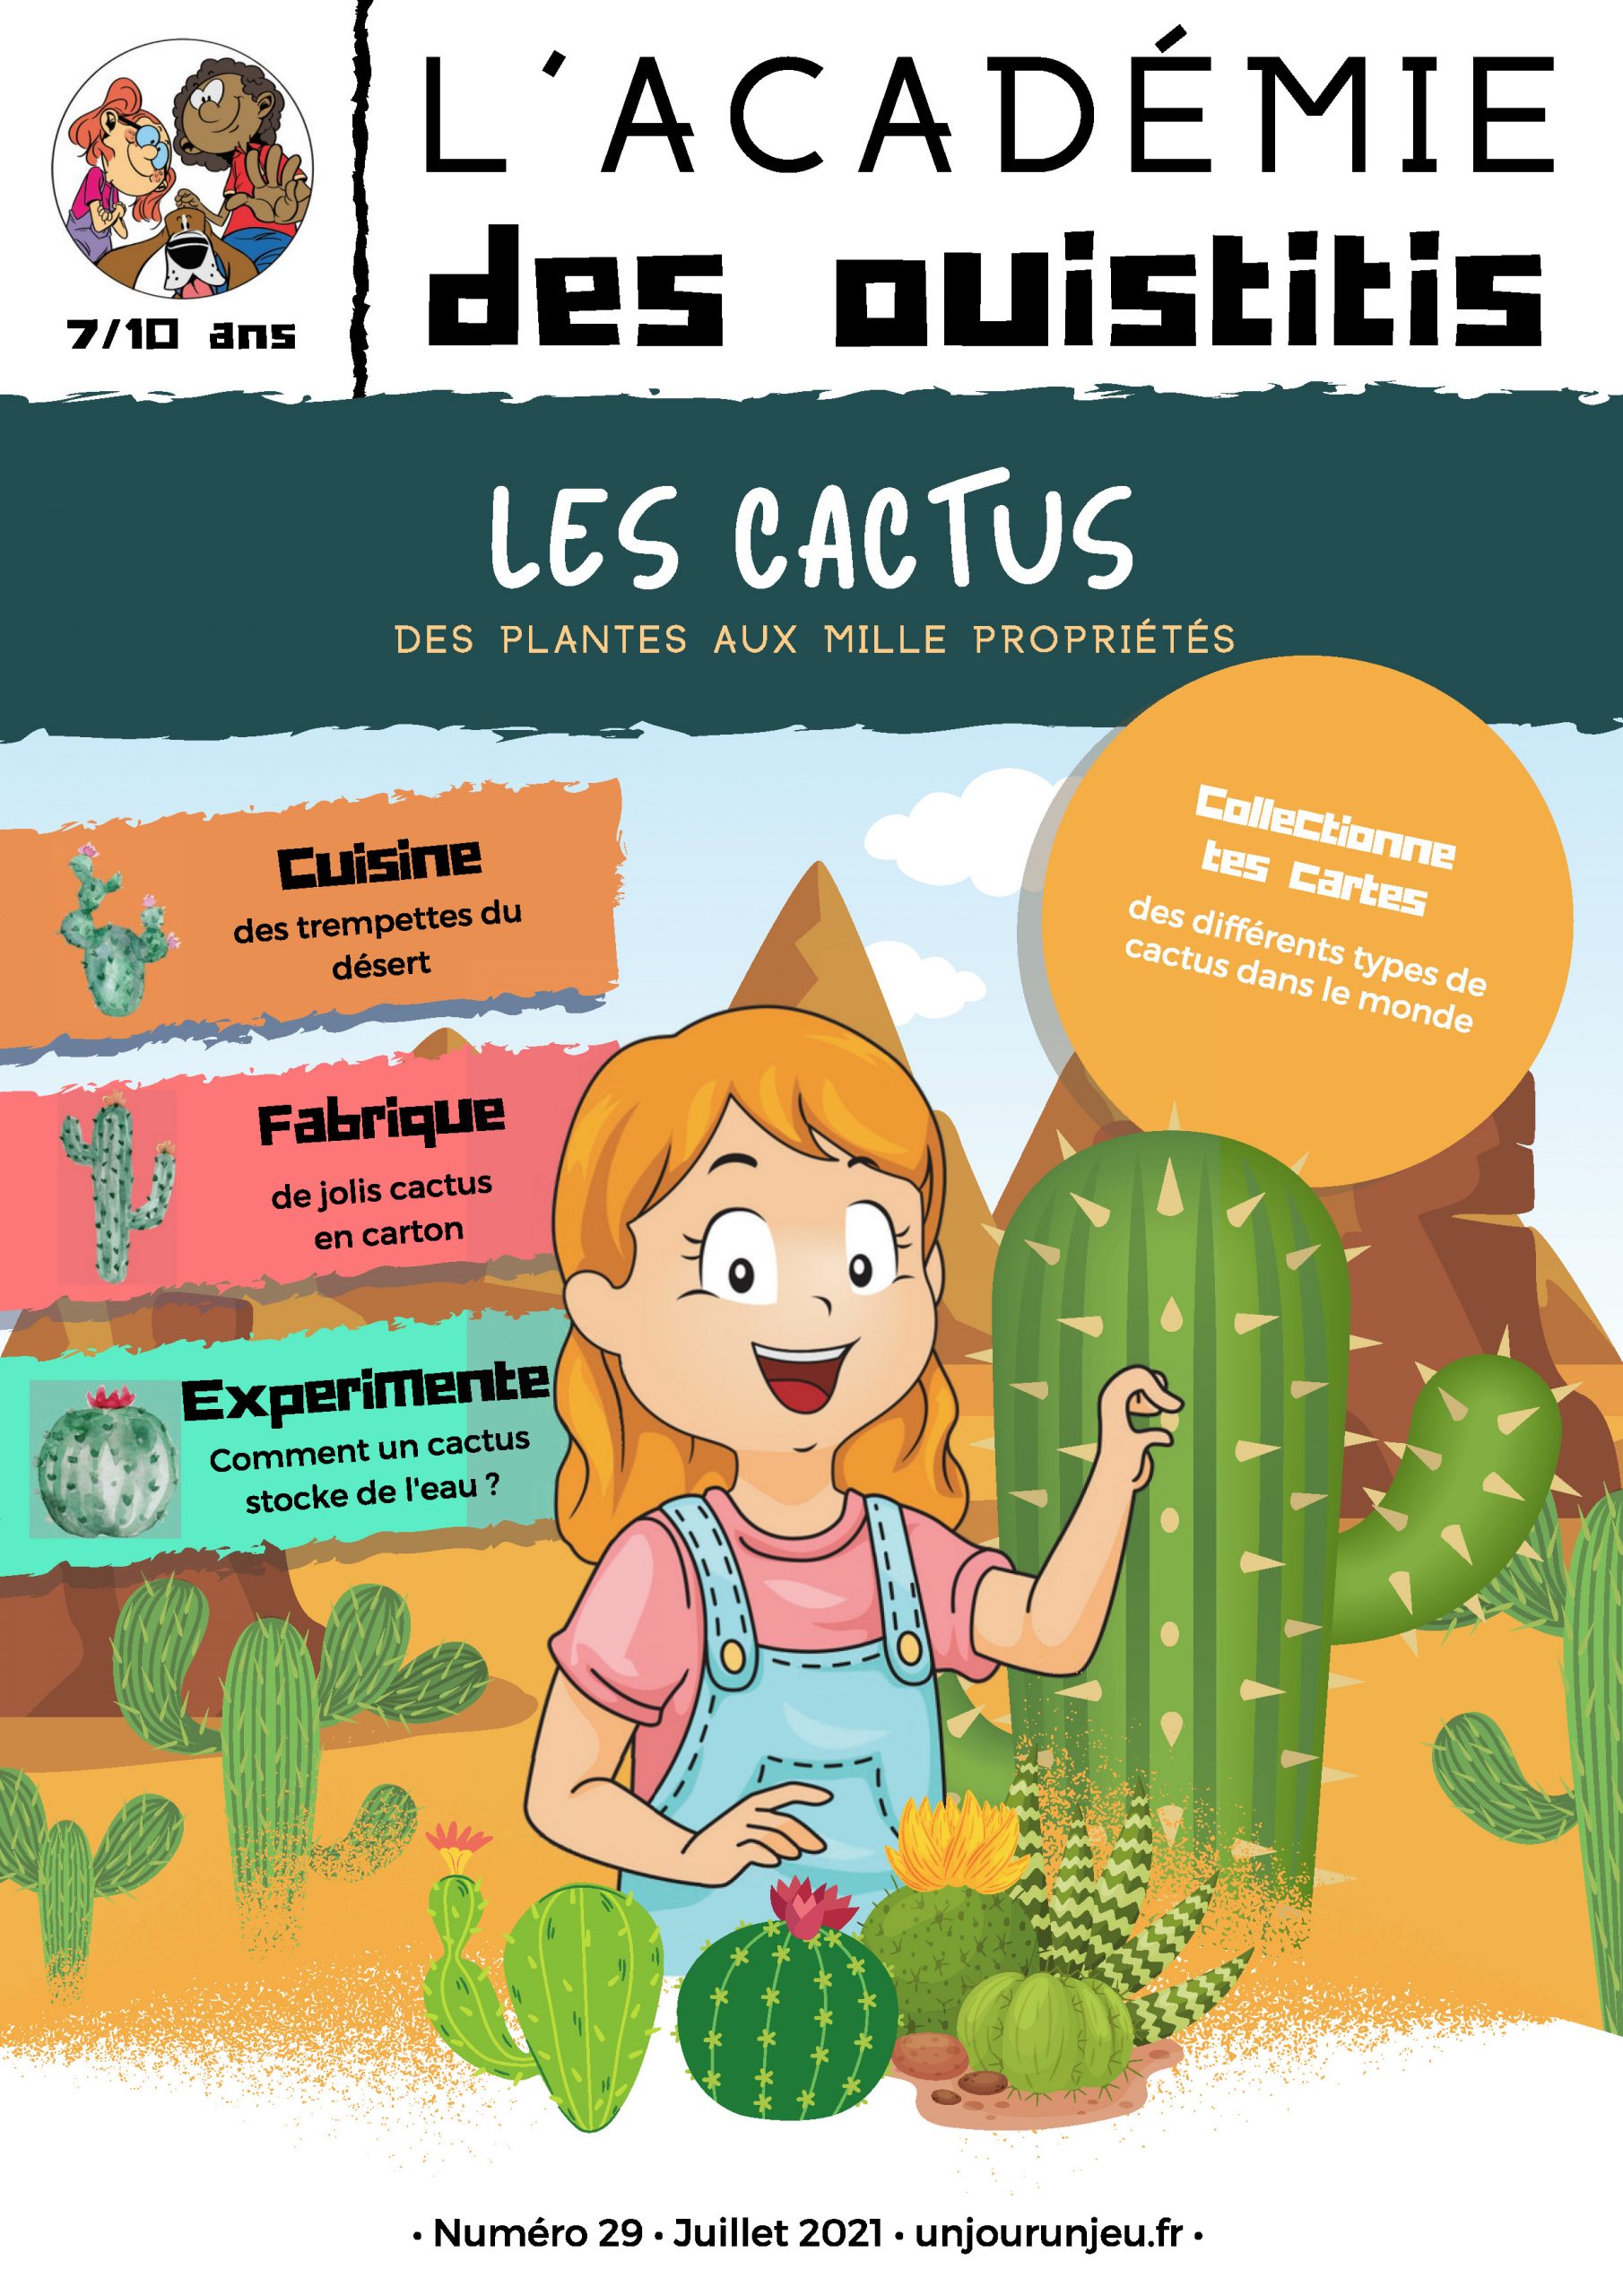 L’Académie des ouistitis et les cactus